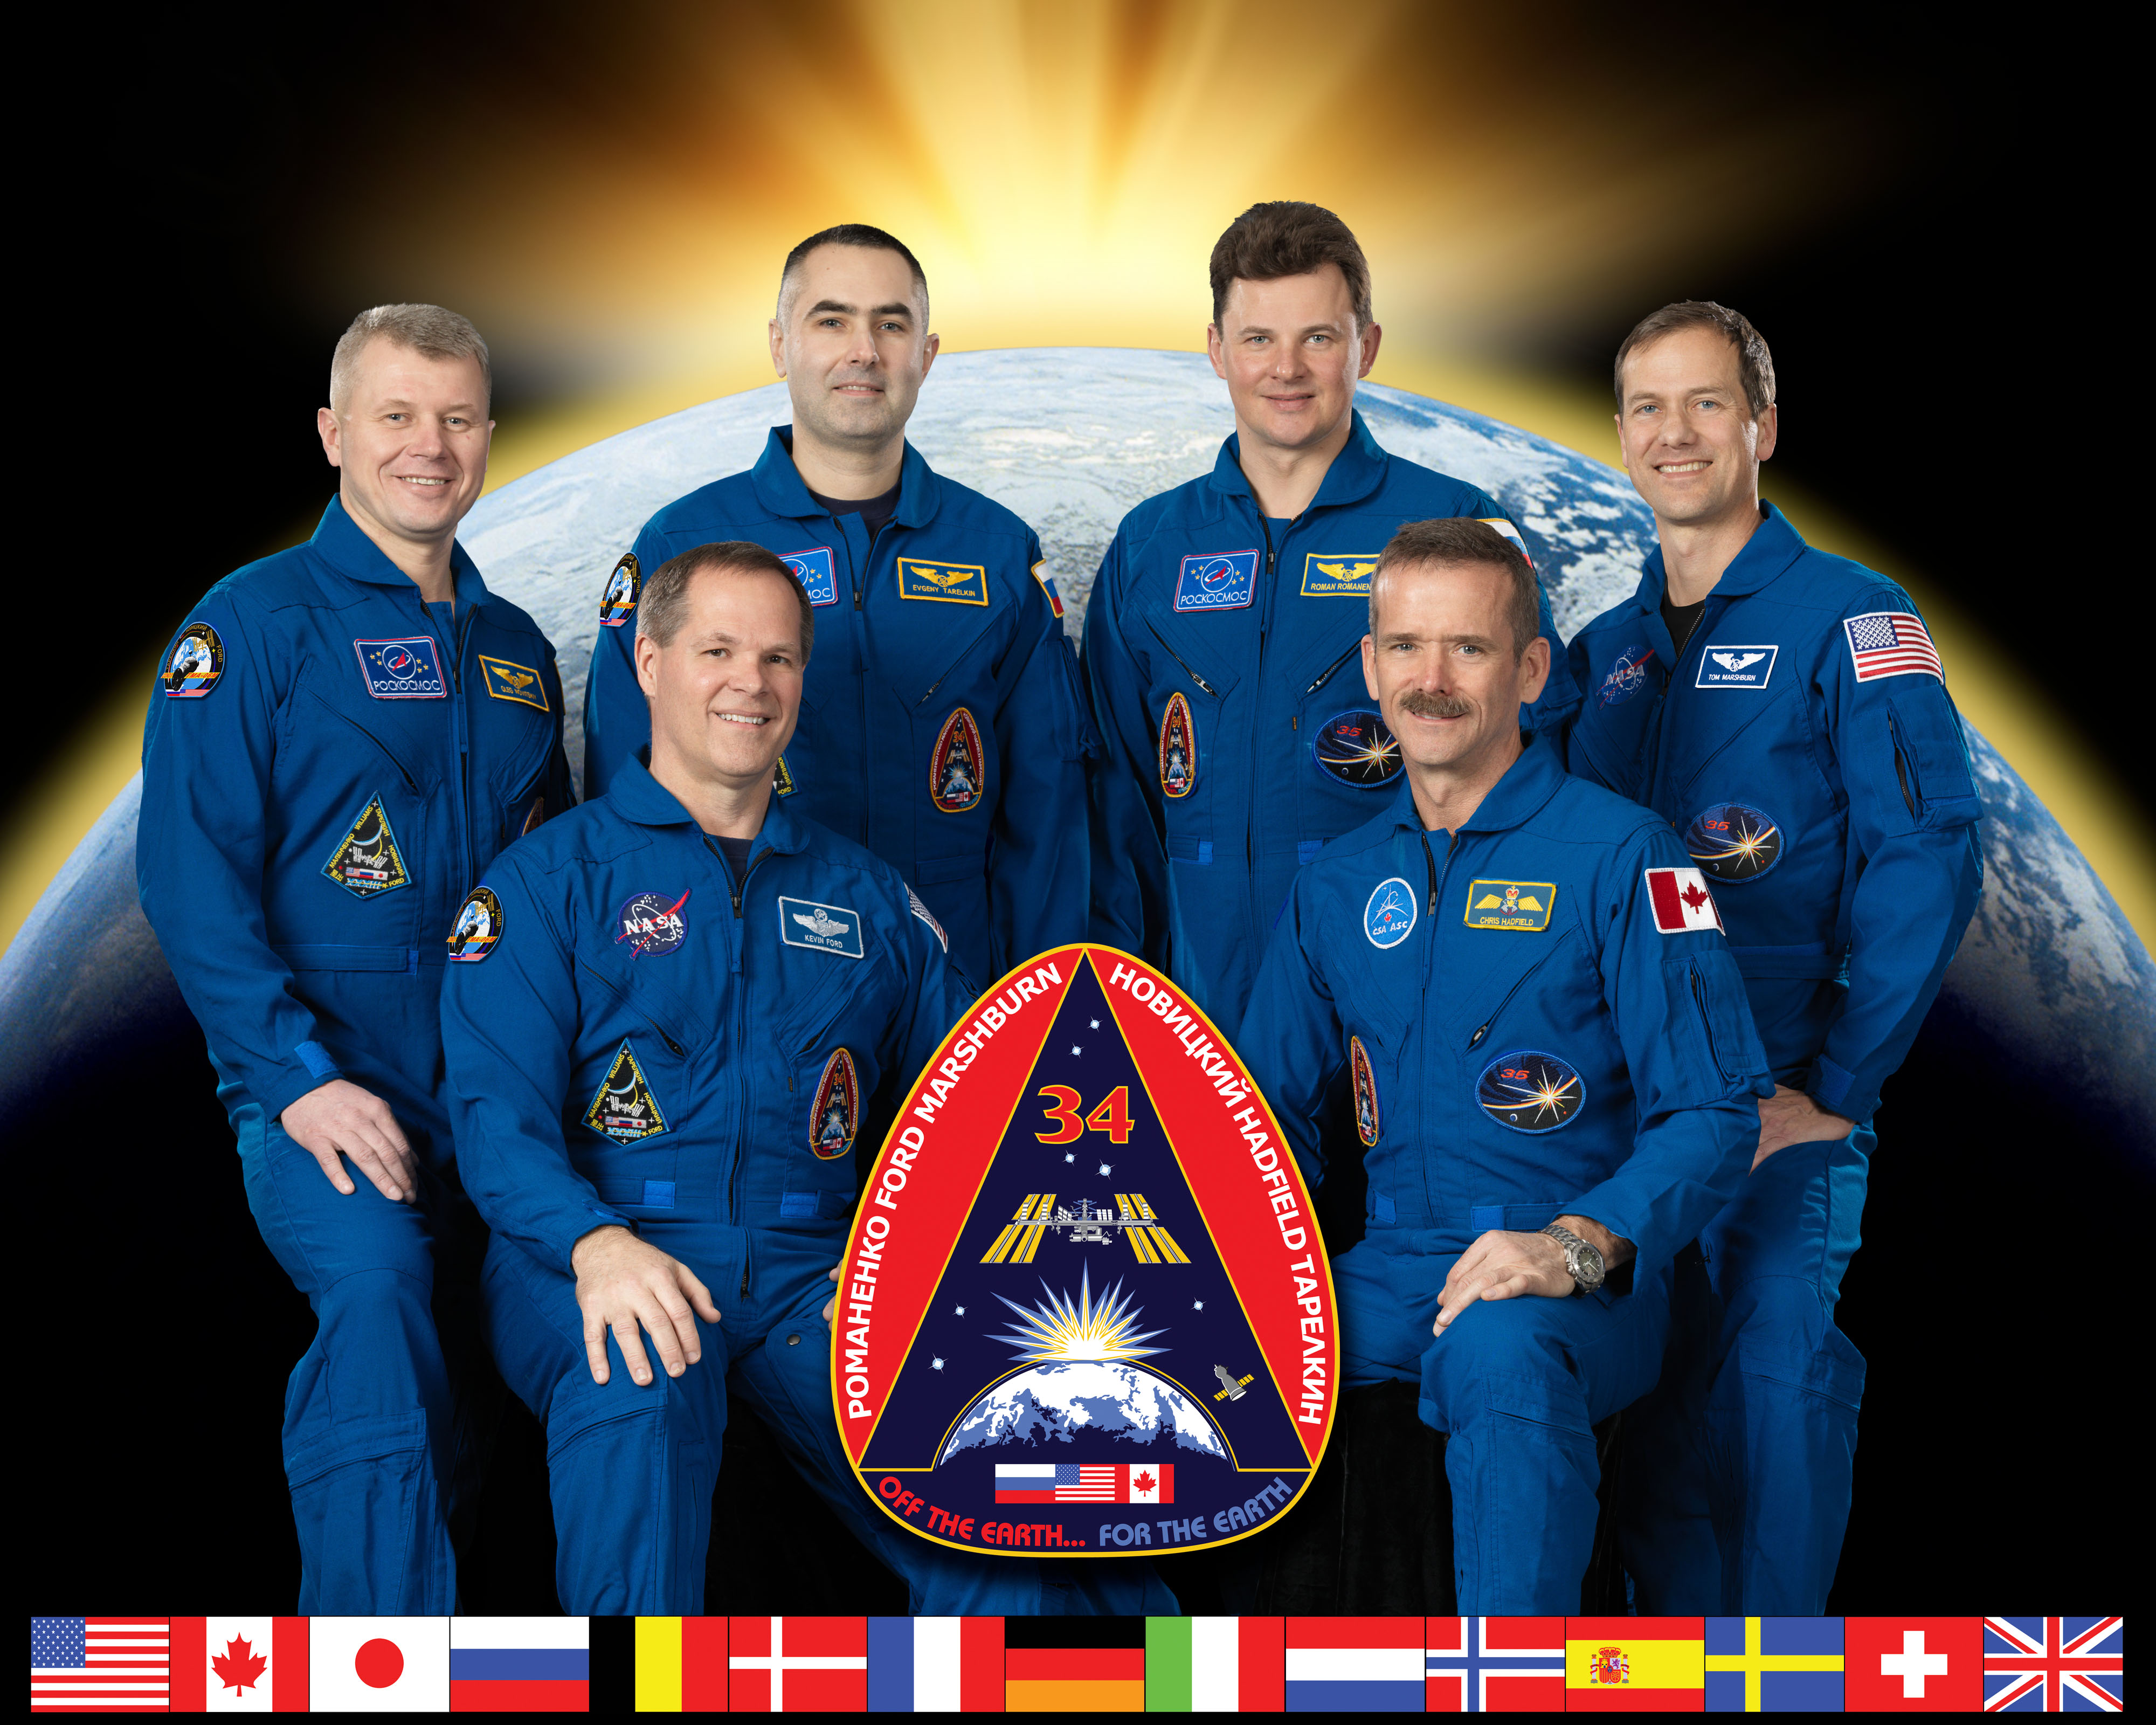 Expedition 34 crew portrait